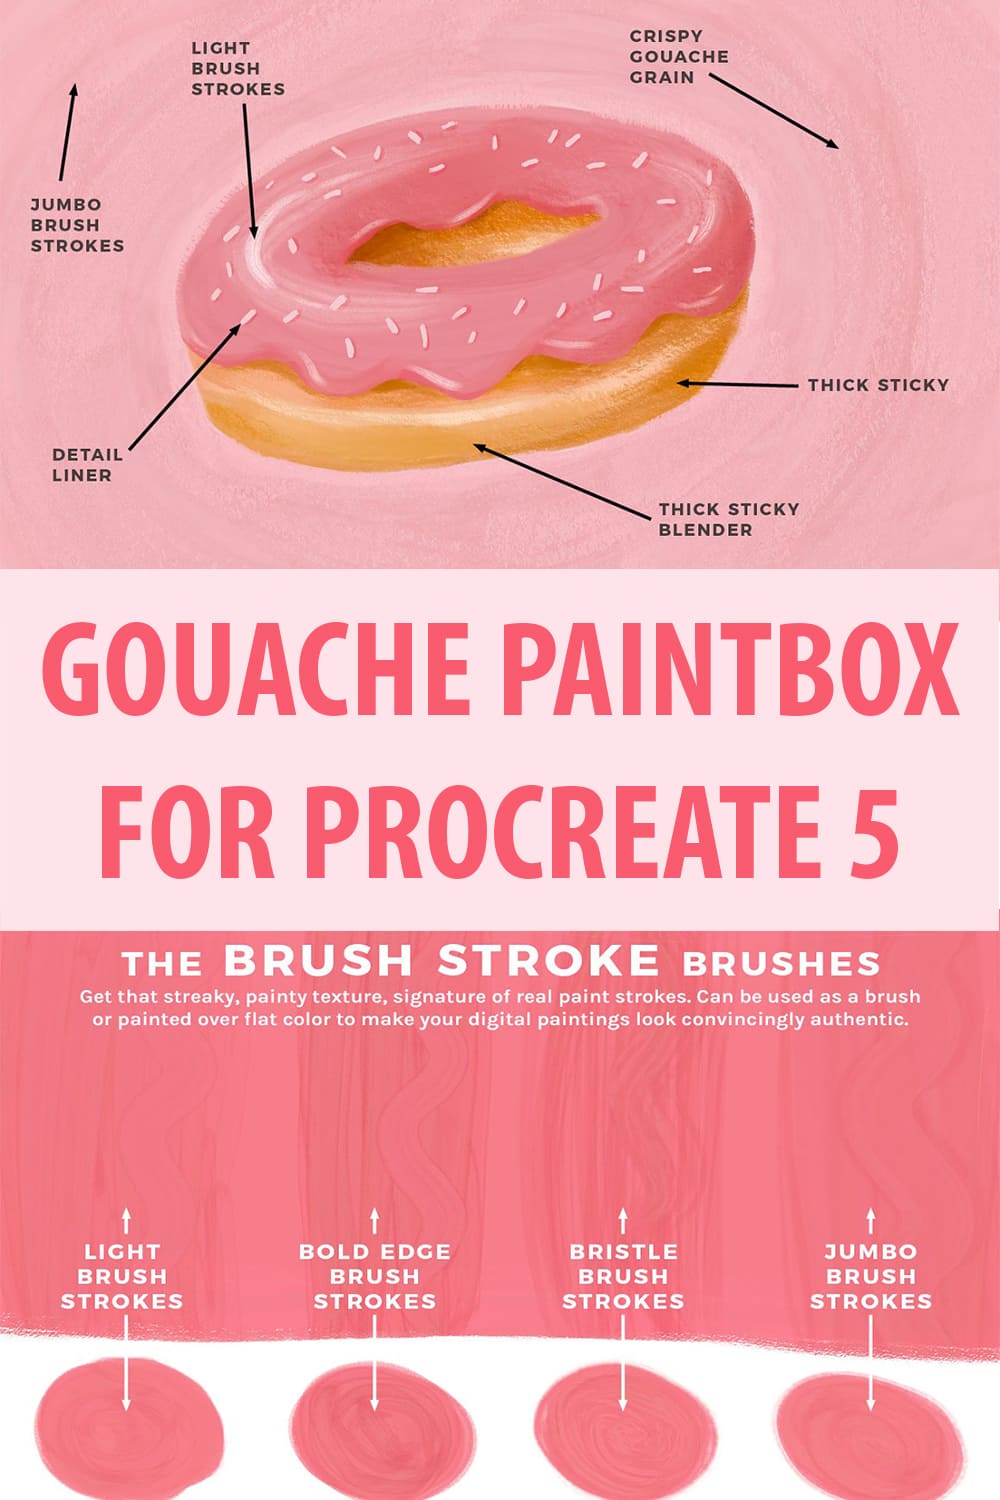 Gouache Paintbox for Procreate 5 - Pinterest.